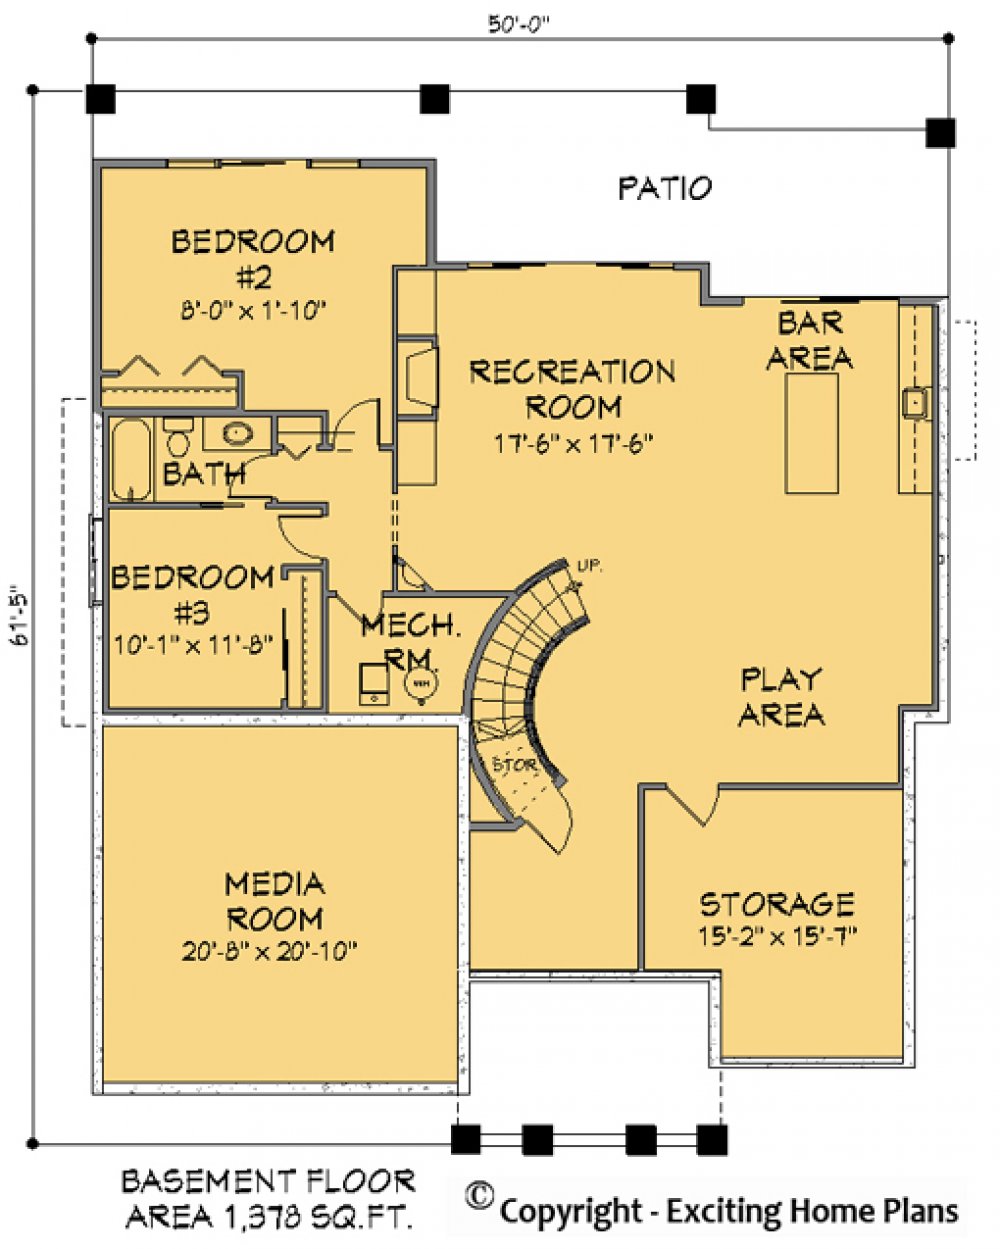 House Plan E1150-10 Lower Floor Plan